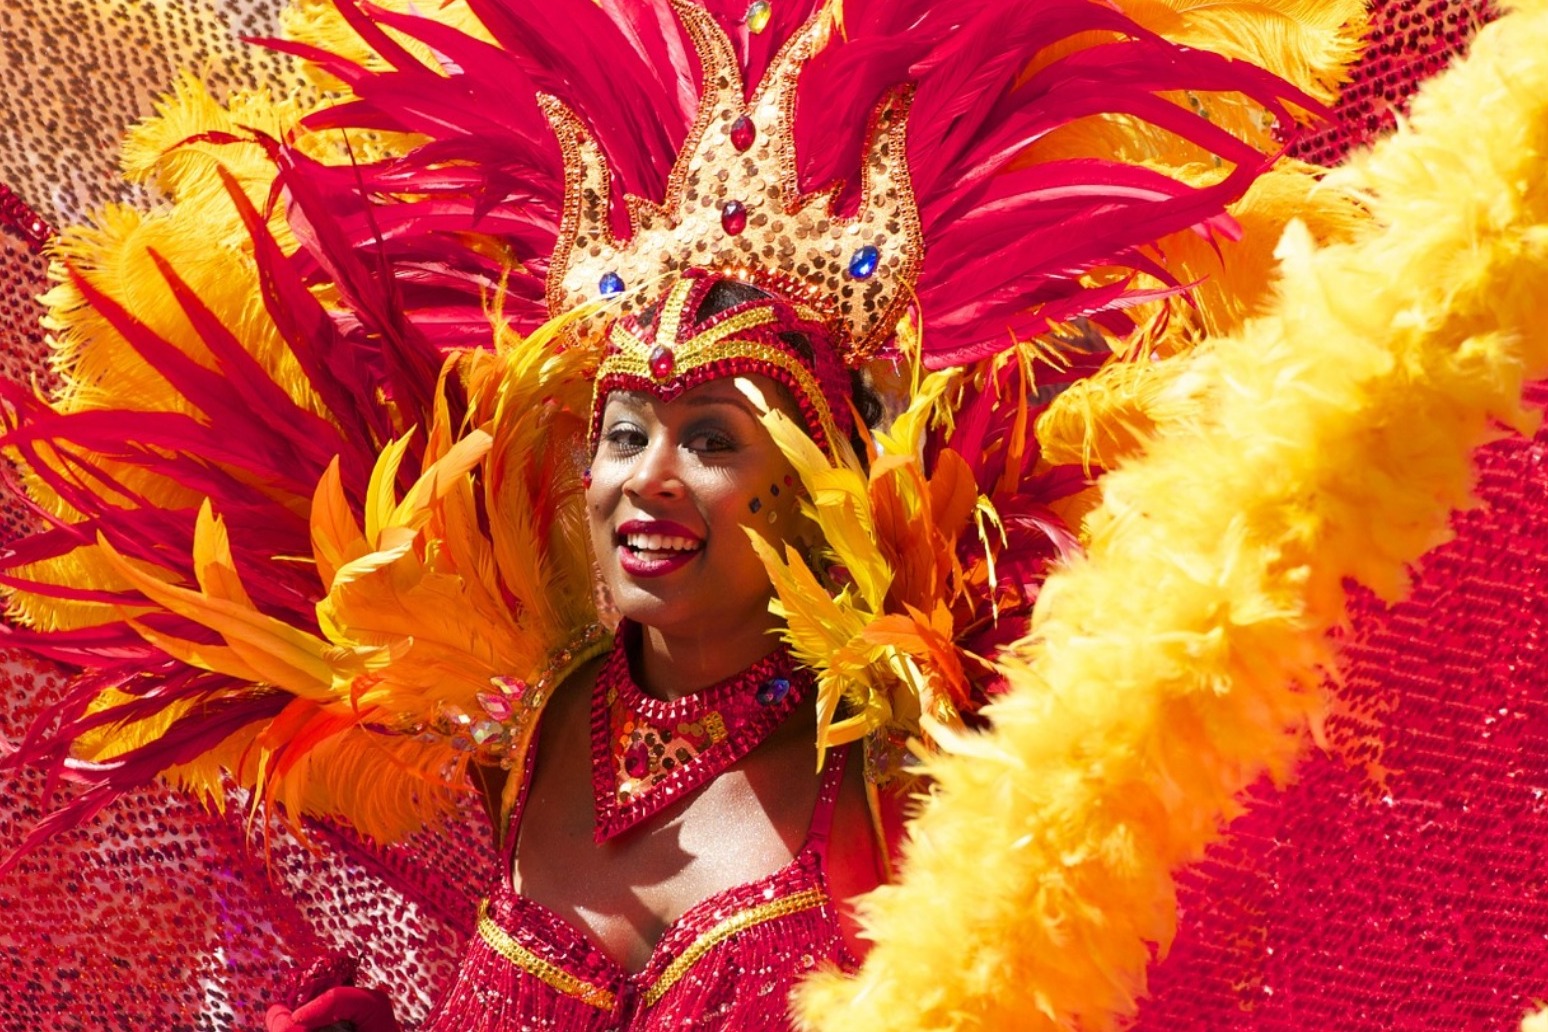 Carnival fever takes hold in Rio de Janiero 